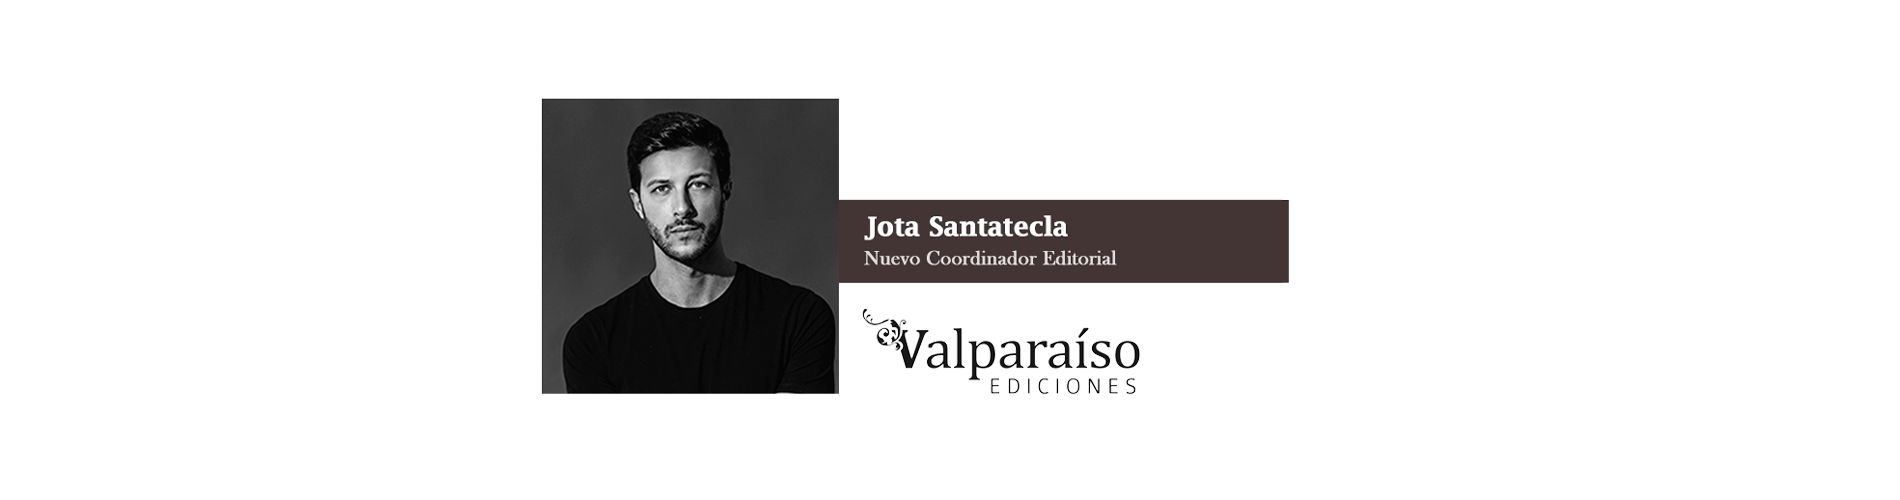 Jota Santatecla, Nuevo Coordinador Editorial